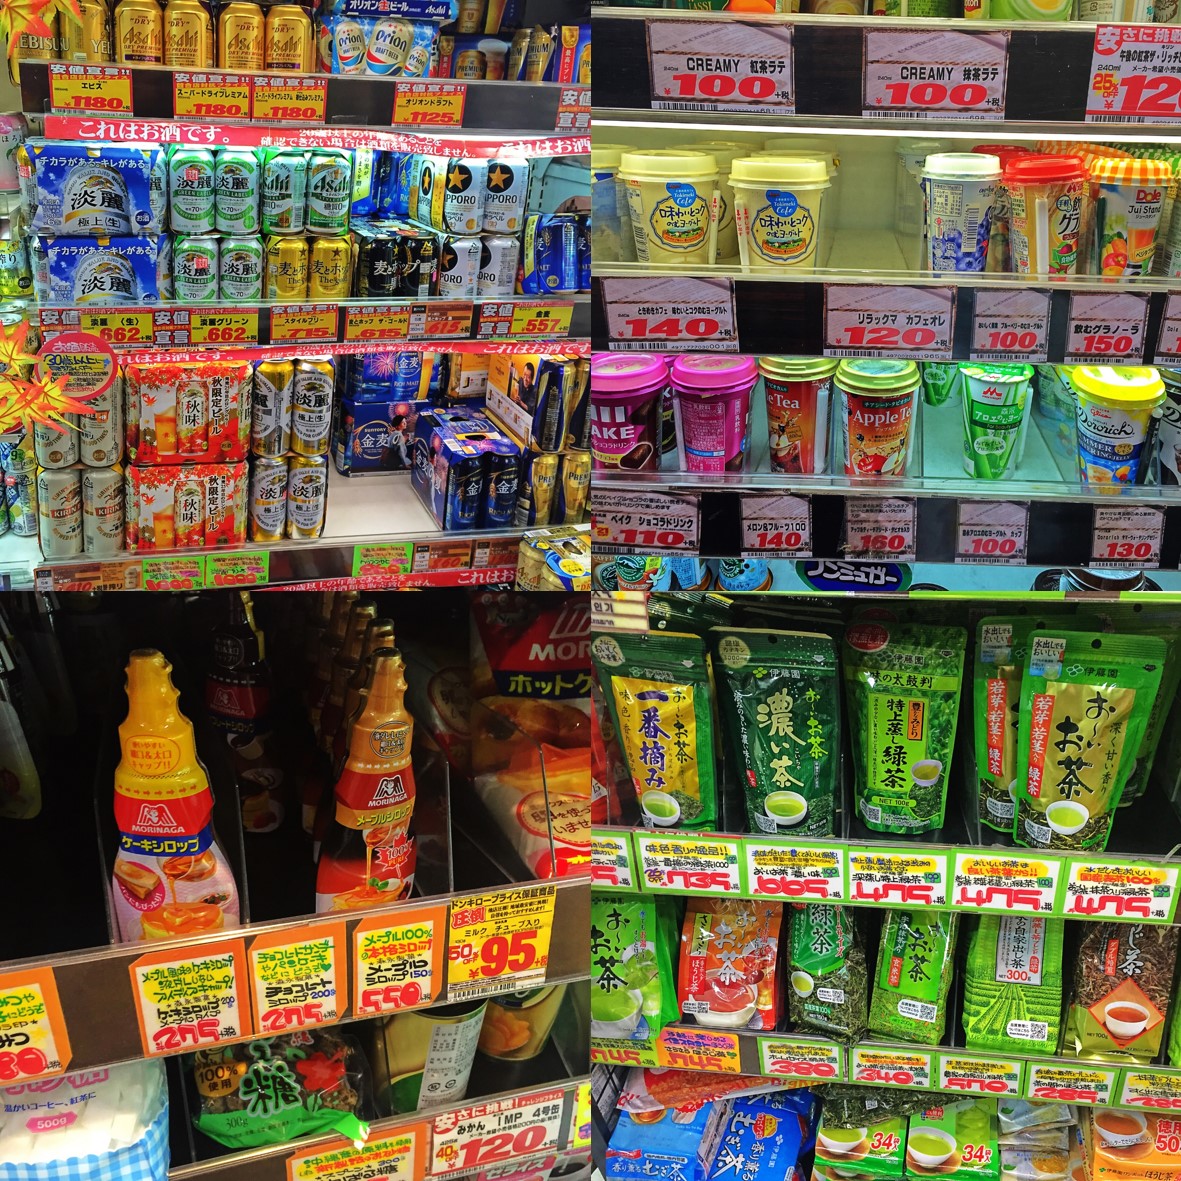 let's shopping พามาดู คสอ.+ขนมญี่ปุ่น ร้านขายยา + ดองกี้ที่ชิบูย่า